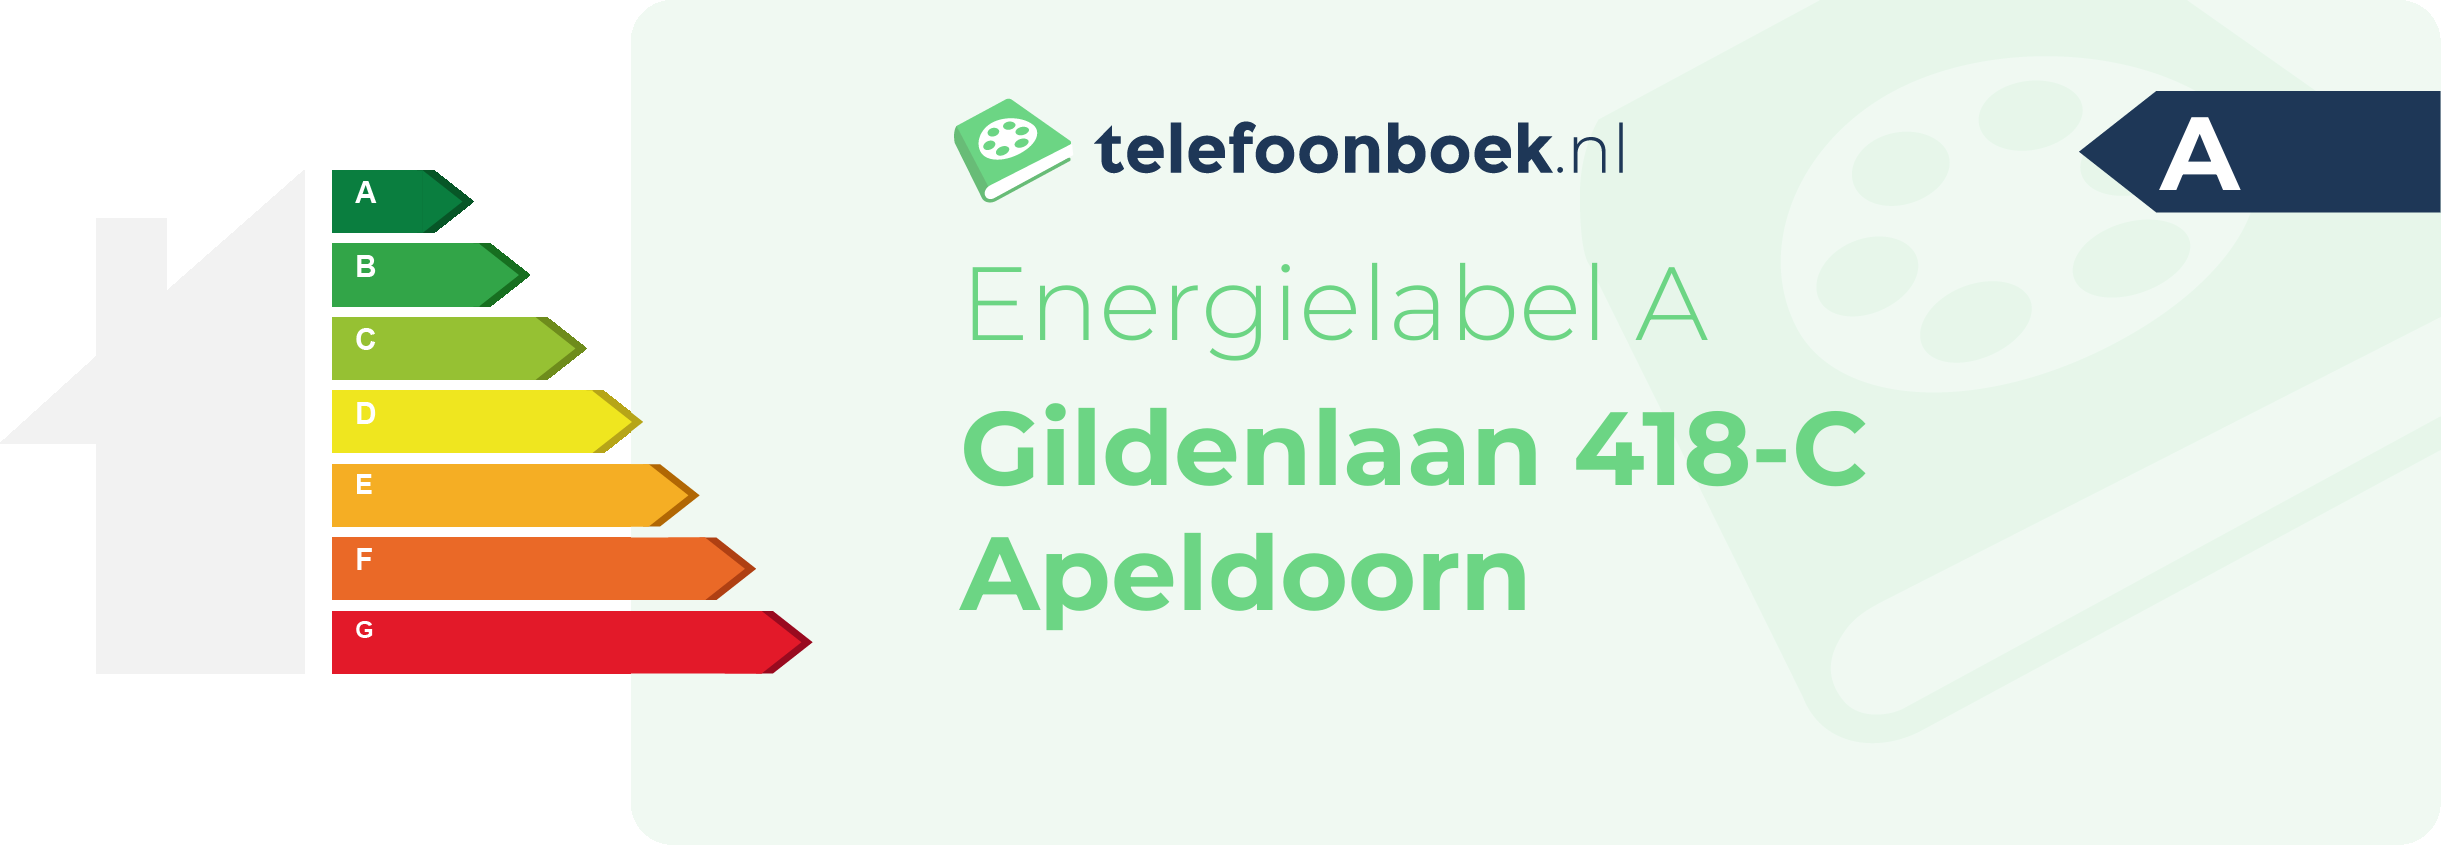 Energielabel Gildenlaan 418-C Apeldoorn